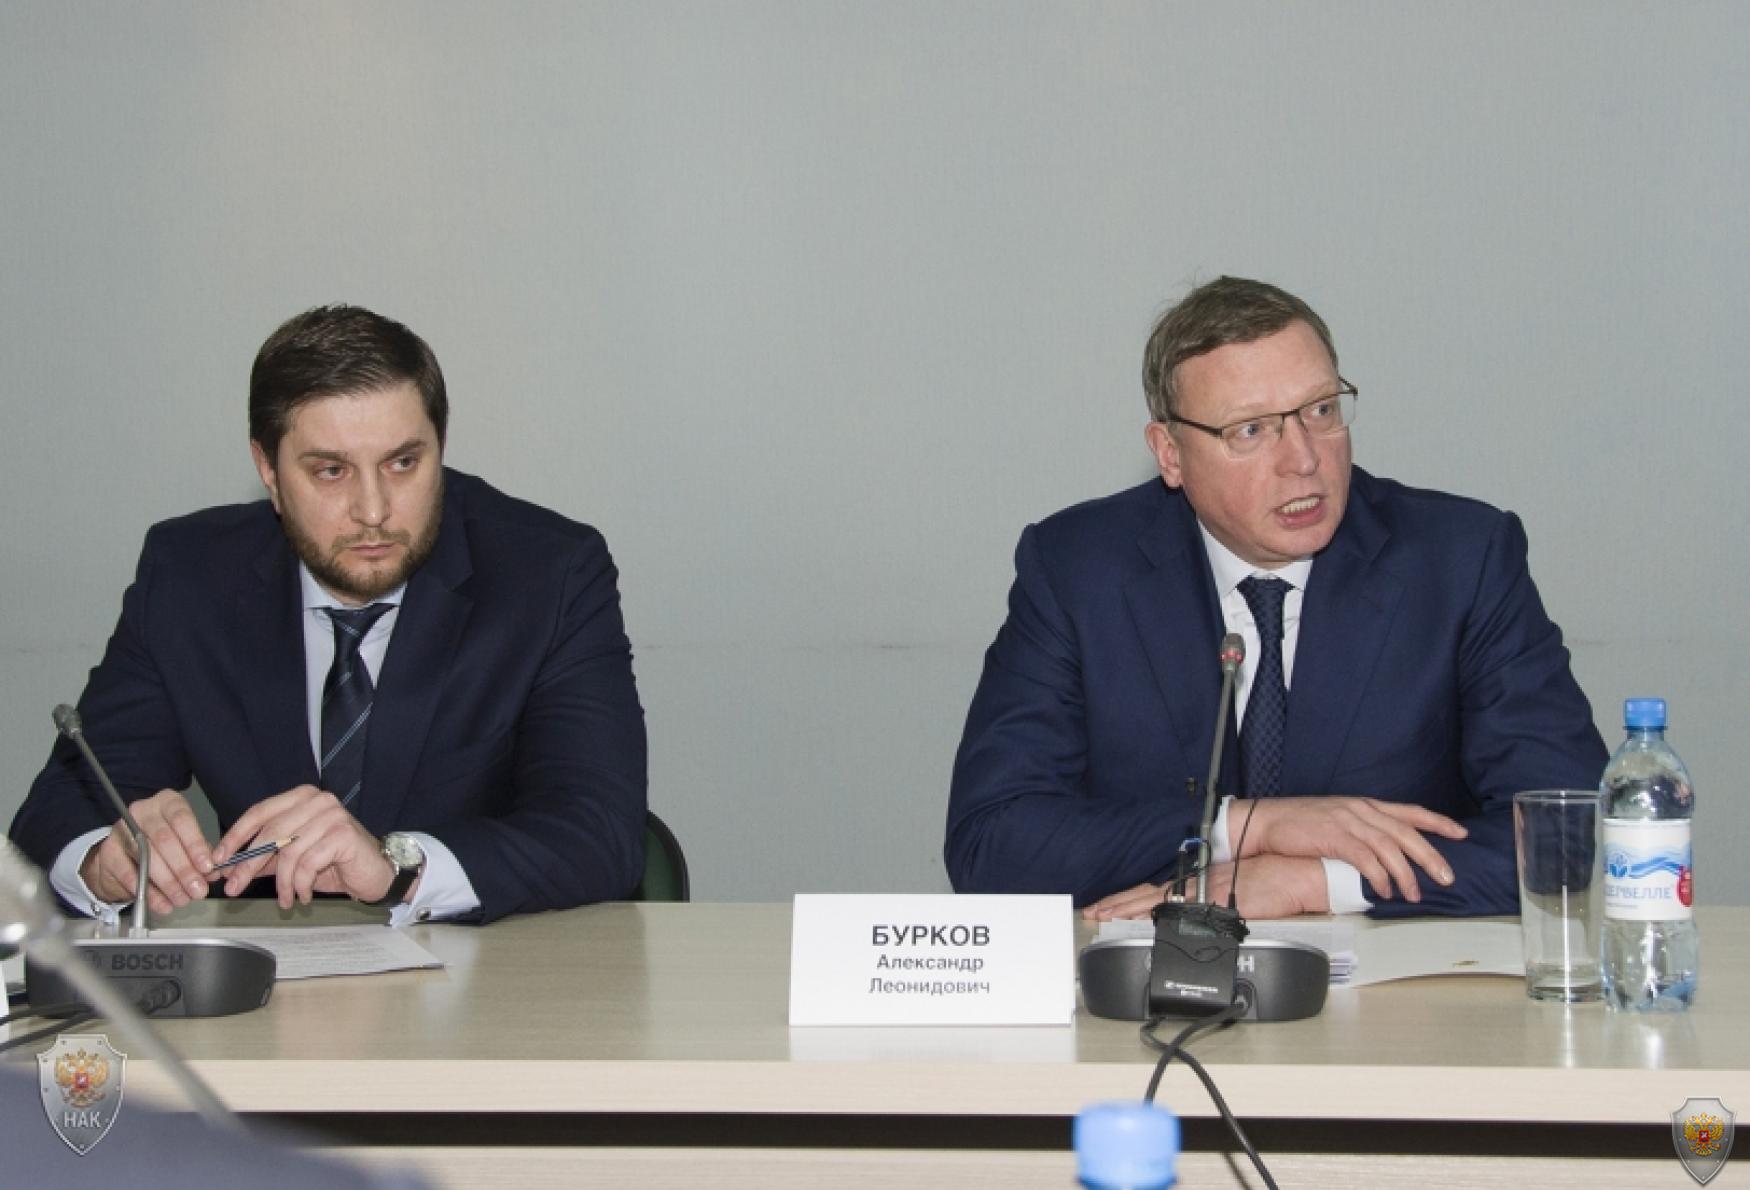 Александр Бурков высоко оценивает уровень межэтнических отношений в регионе и ставит задачей сохранить Омскую область территорией согласия